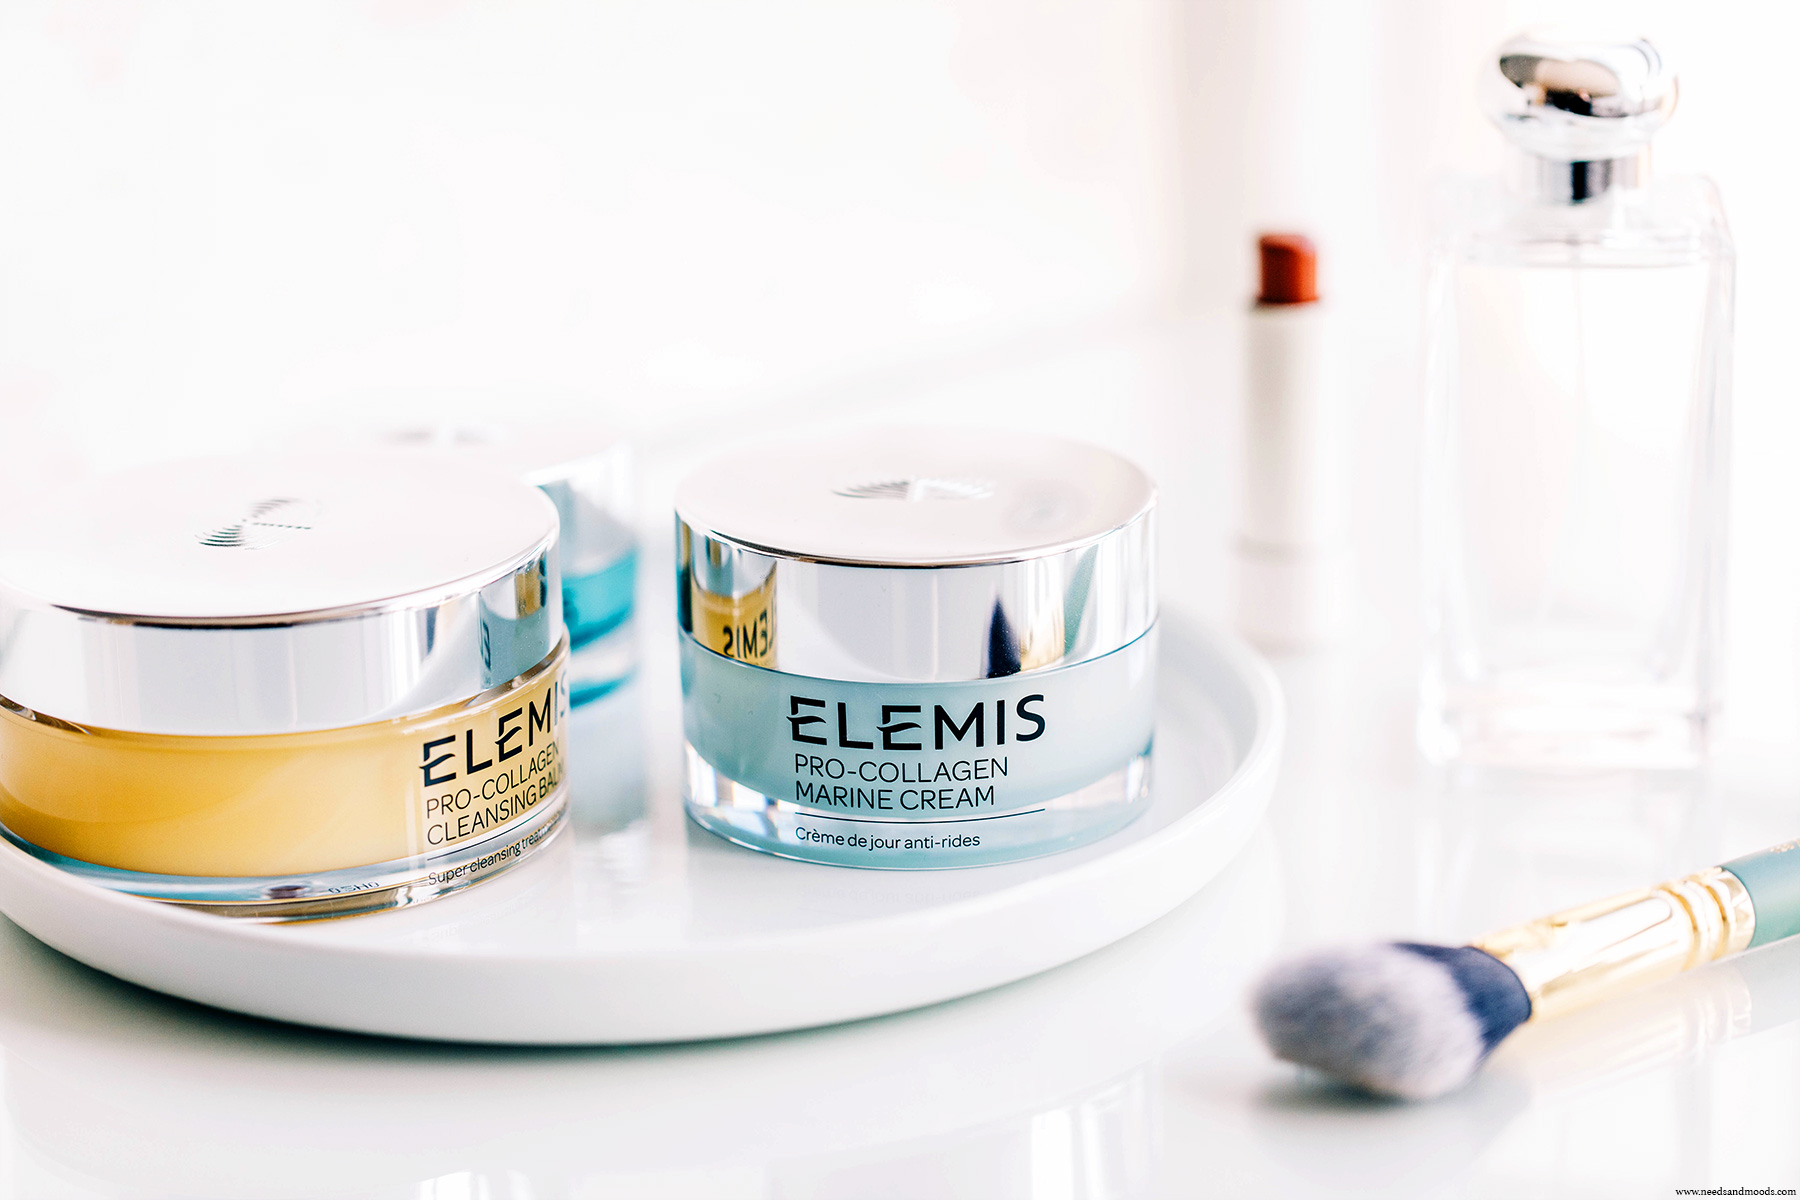 elemis pro collagen marine cream